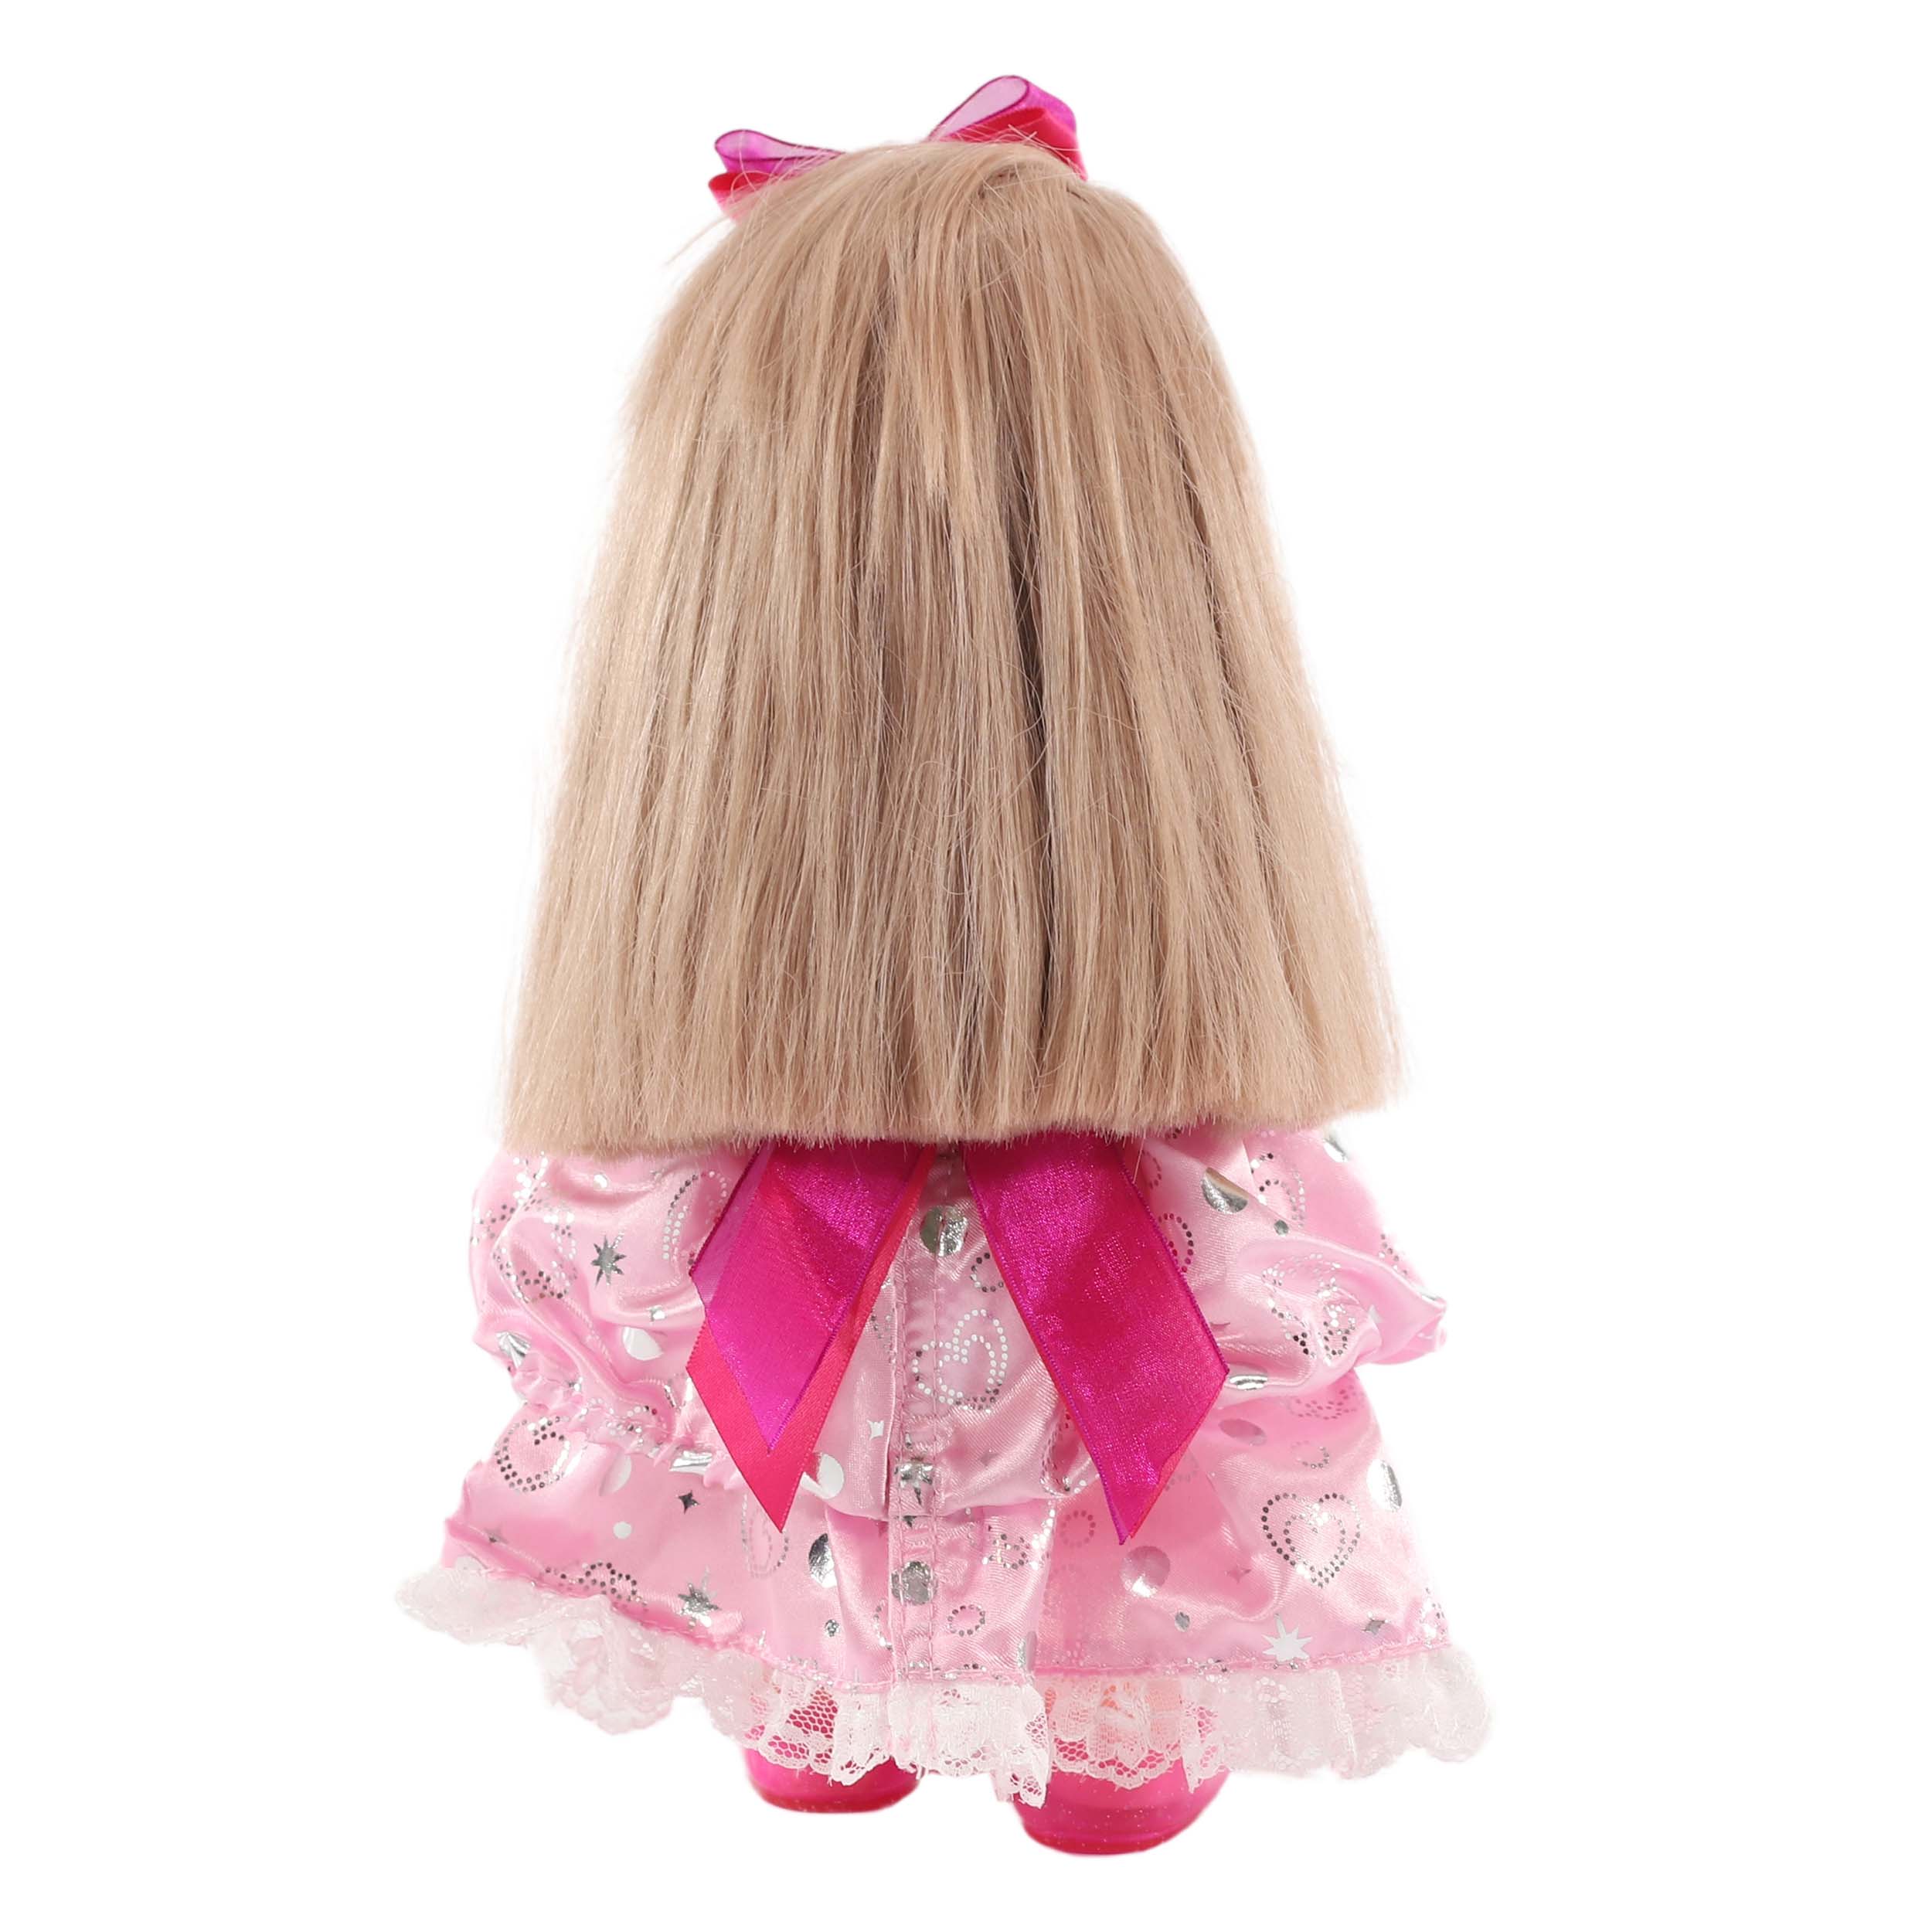 Комплект с бальным платьем для куклы Мелл  